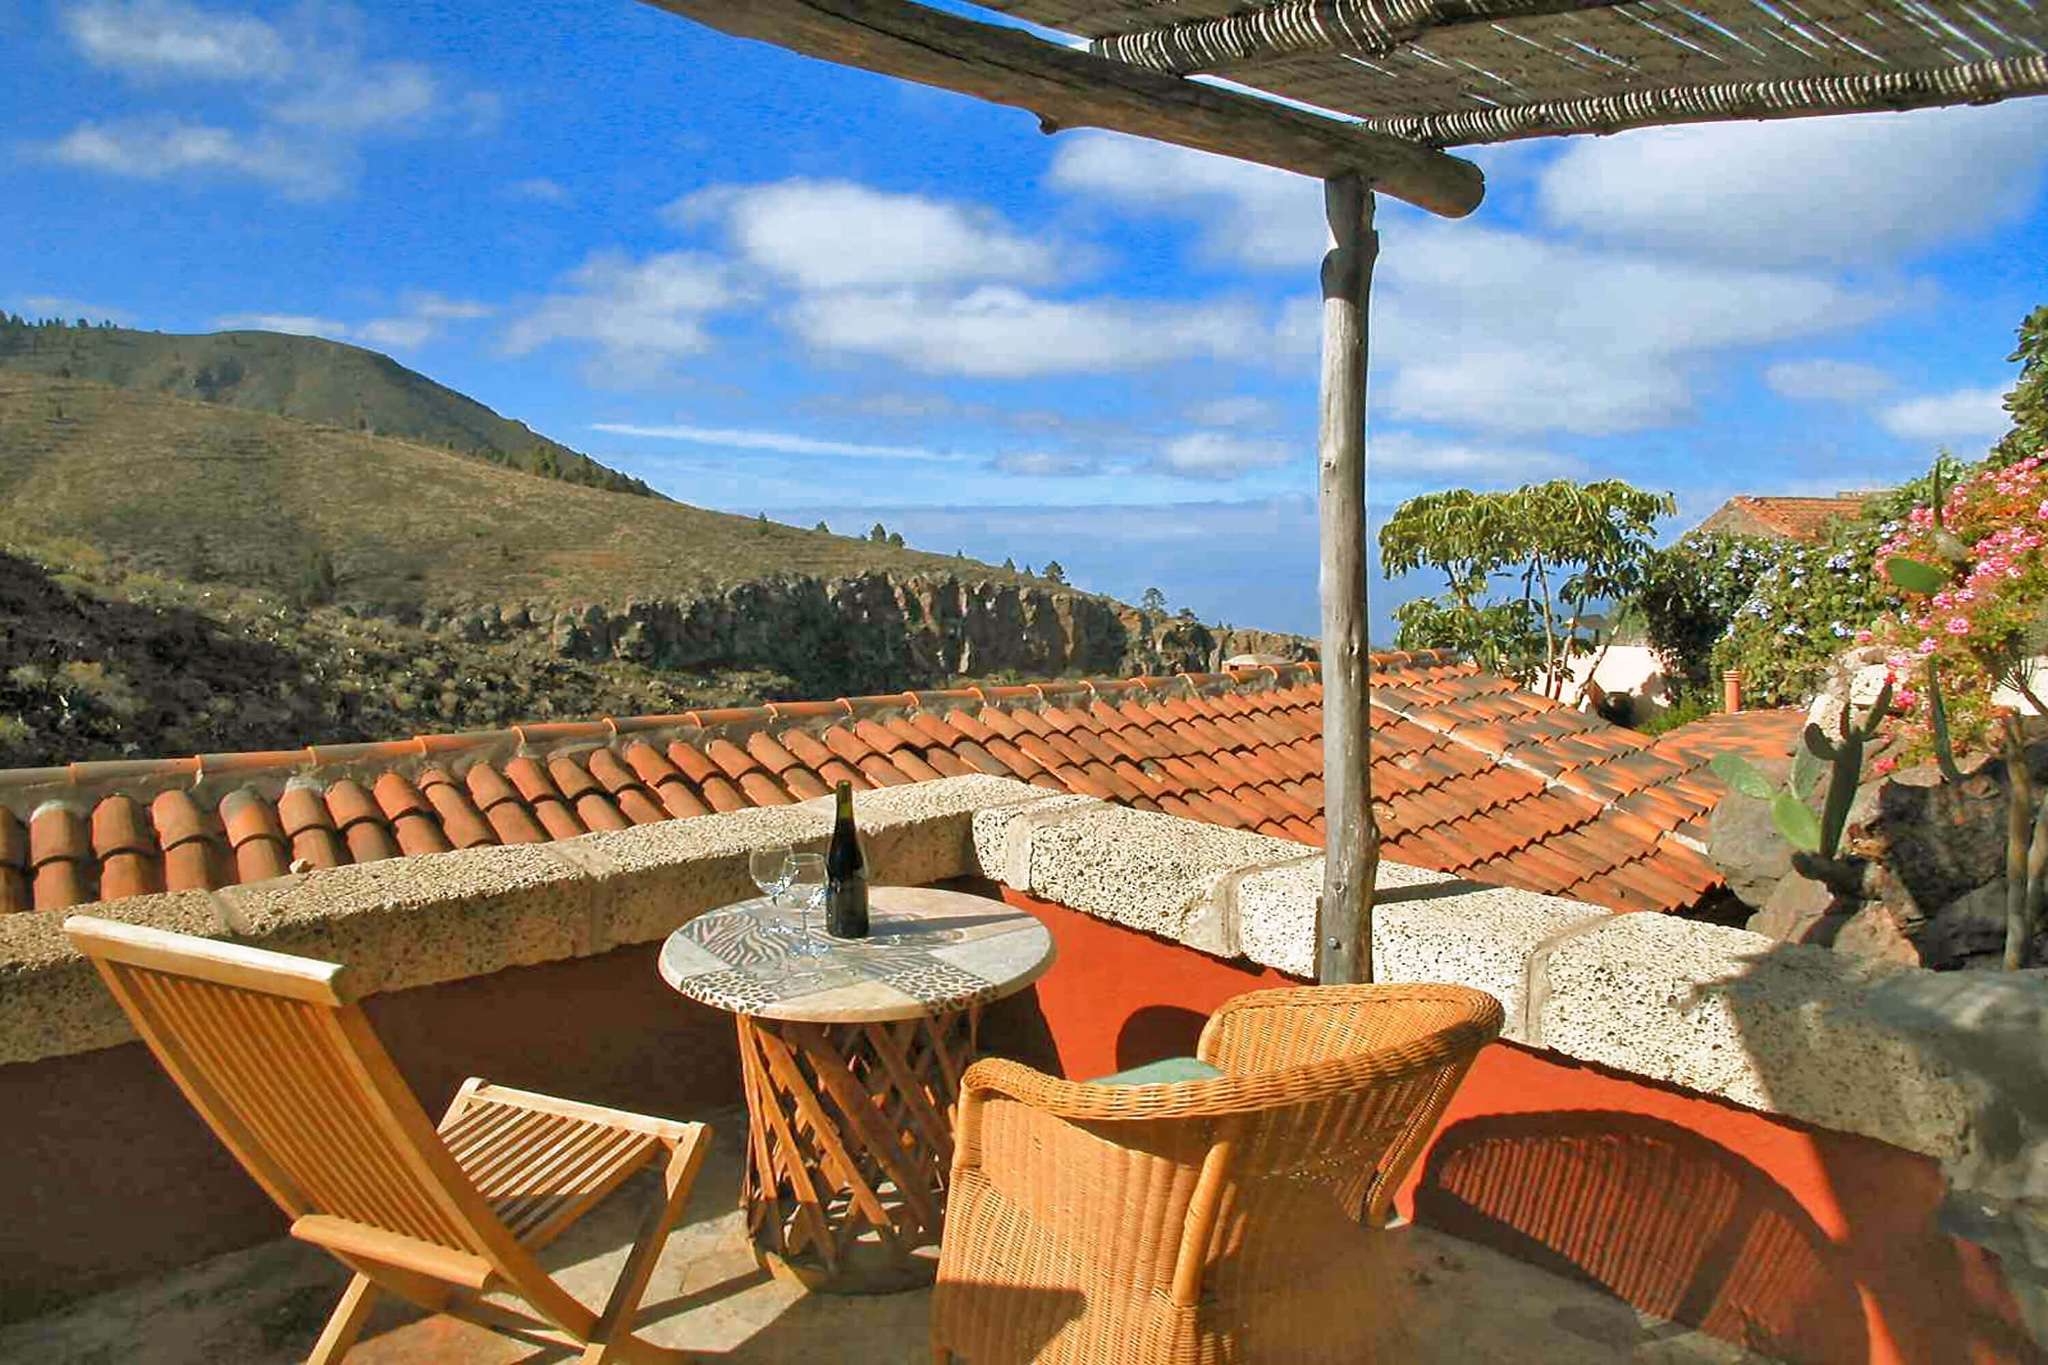 Mooi vakantiehuis met gemeenschappelijk zwembad voor een vakantie op het platteland, omringd door het prachtige landschap van Tenerife